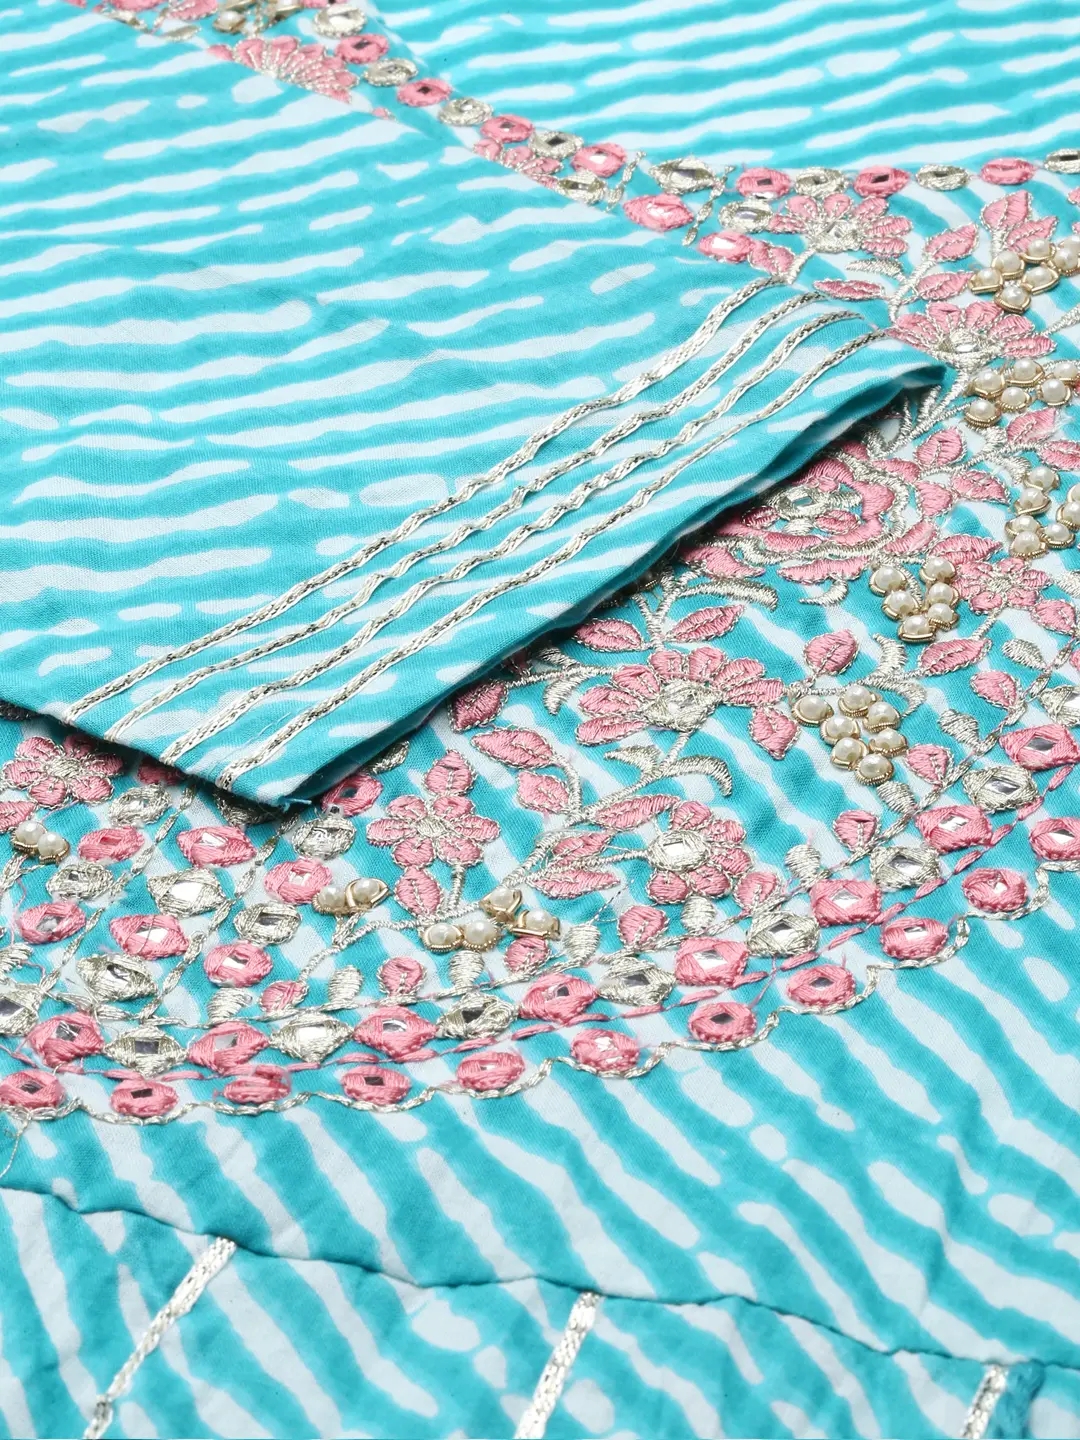 Women's Blue Cotton Blend Tie Dye Comfort Fit Kurta Sets